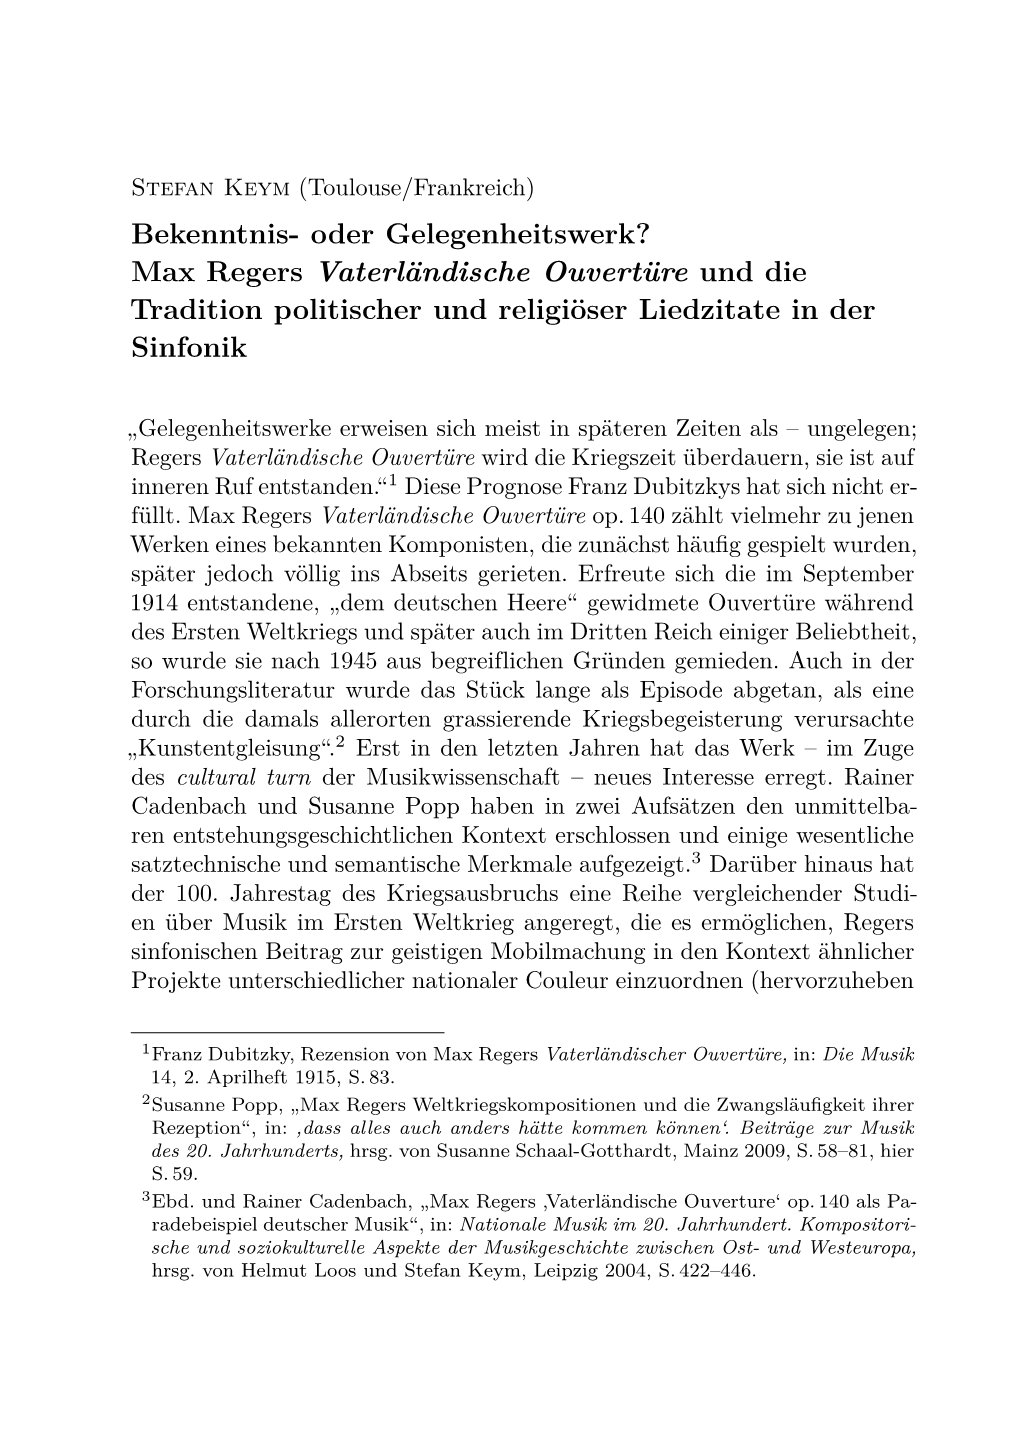 Max Regers Vaterländische Ouvertüre Und Die Tradition Politischer Und Religiöser Liedzitate in Der Sinfonik